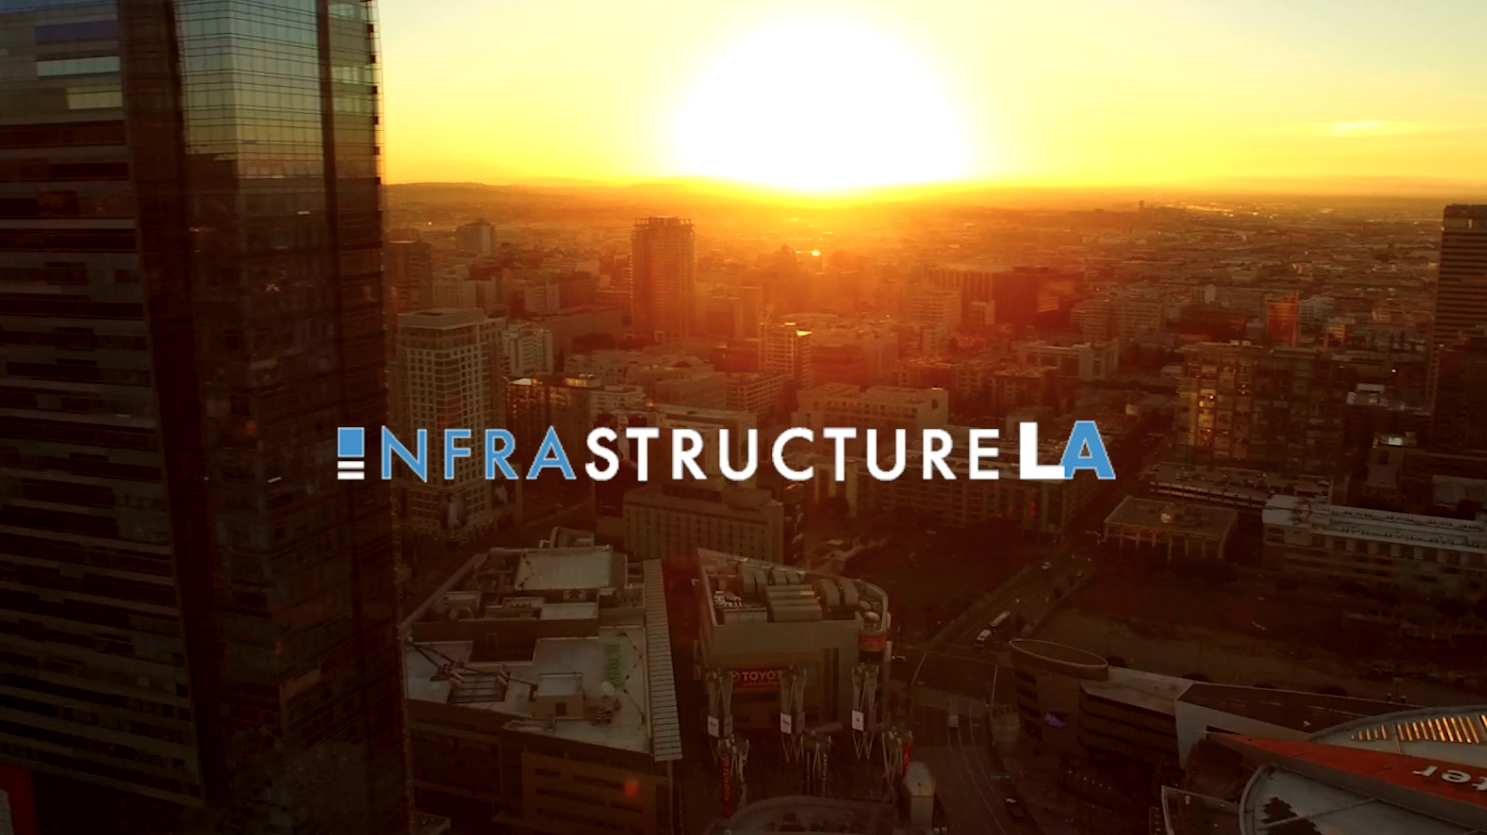 Infrastructure LA